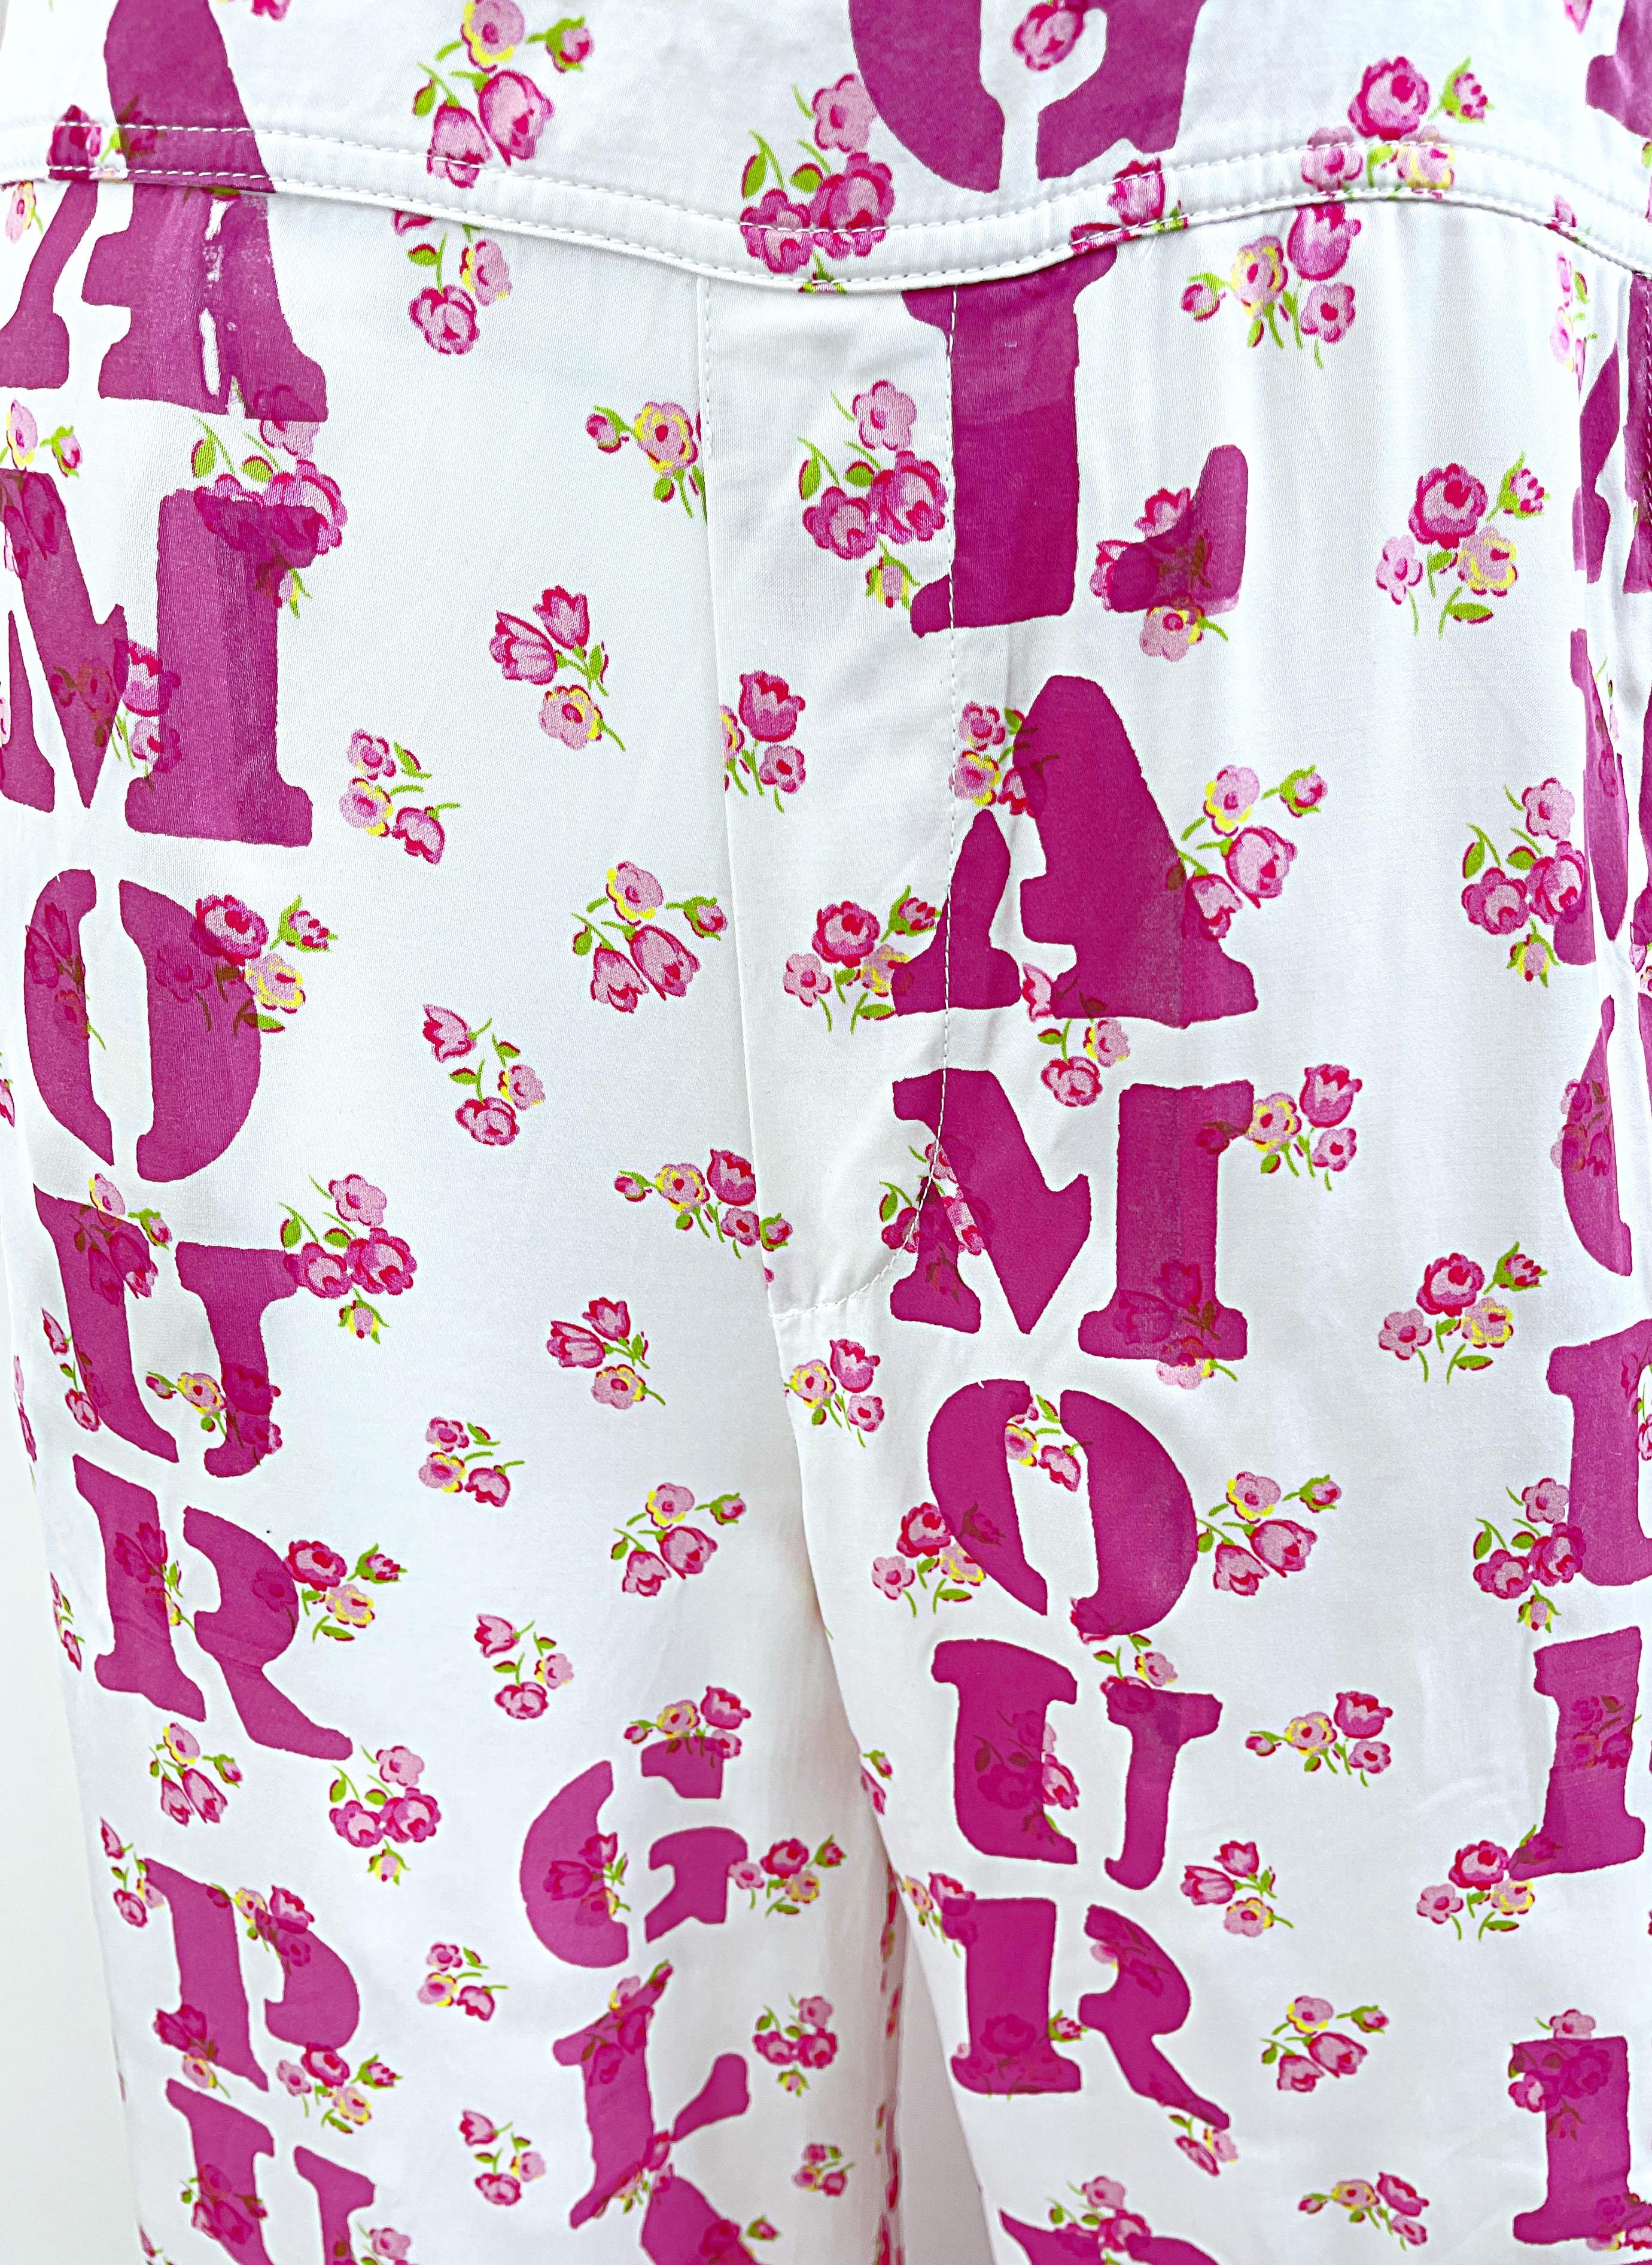 Moschino Couture Resort 2020 Größe 8 Glamour Puss Overalls mit Blumendruck in Übergröße Damen